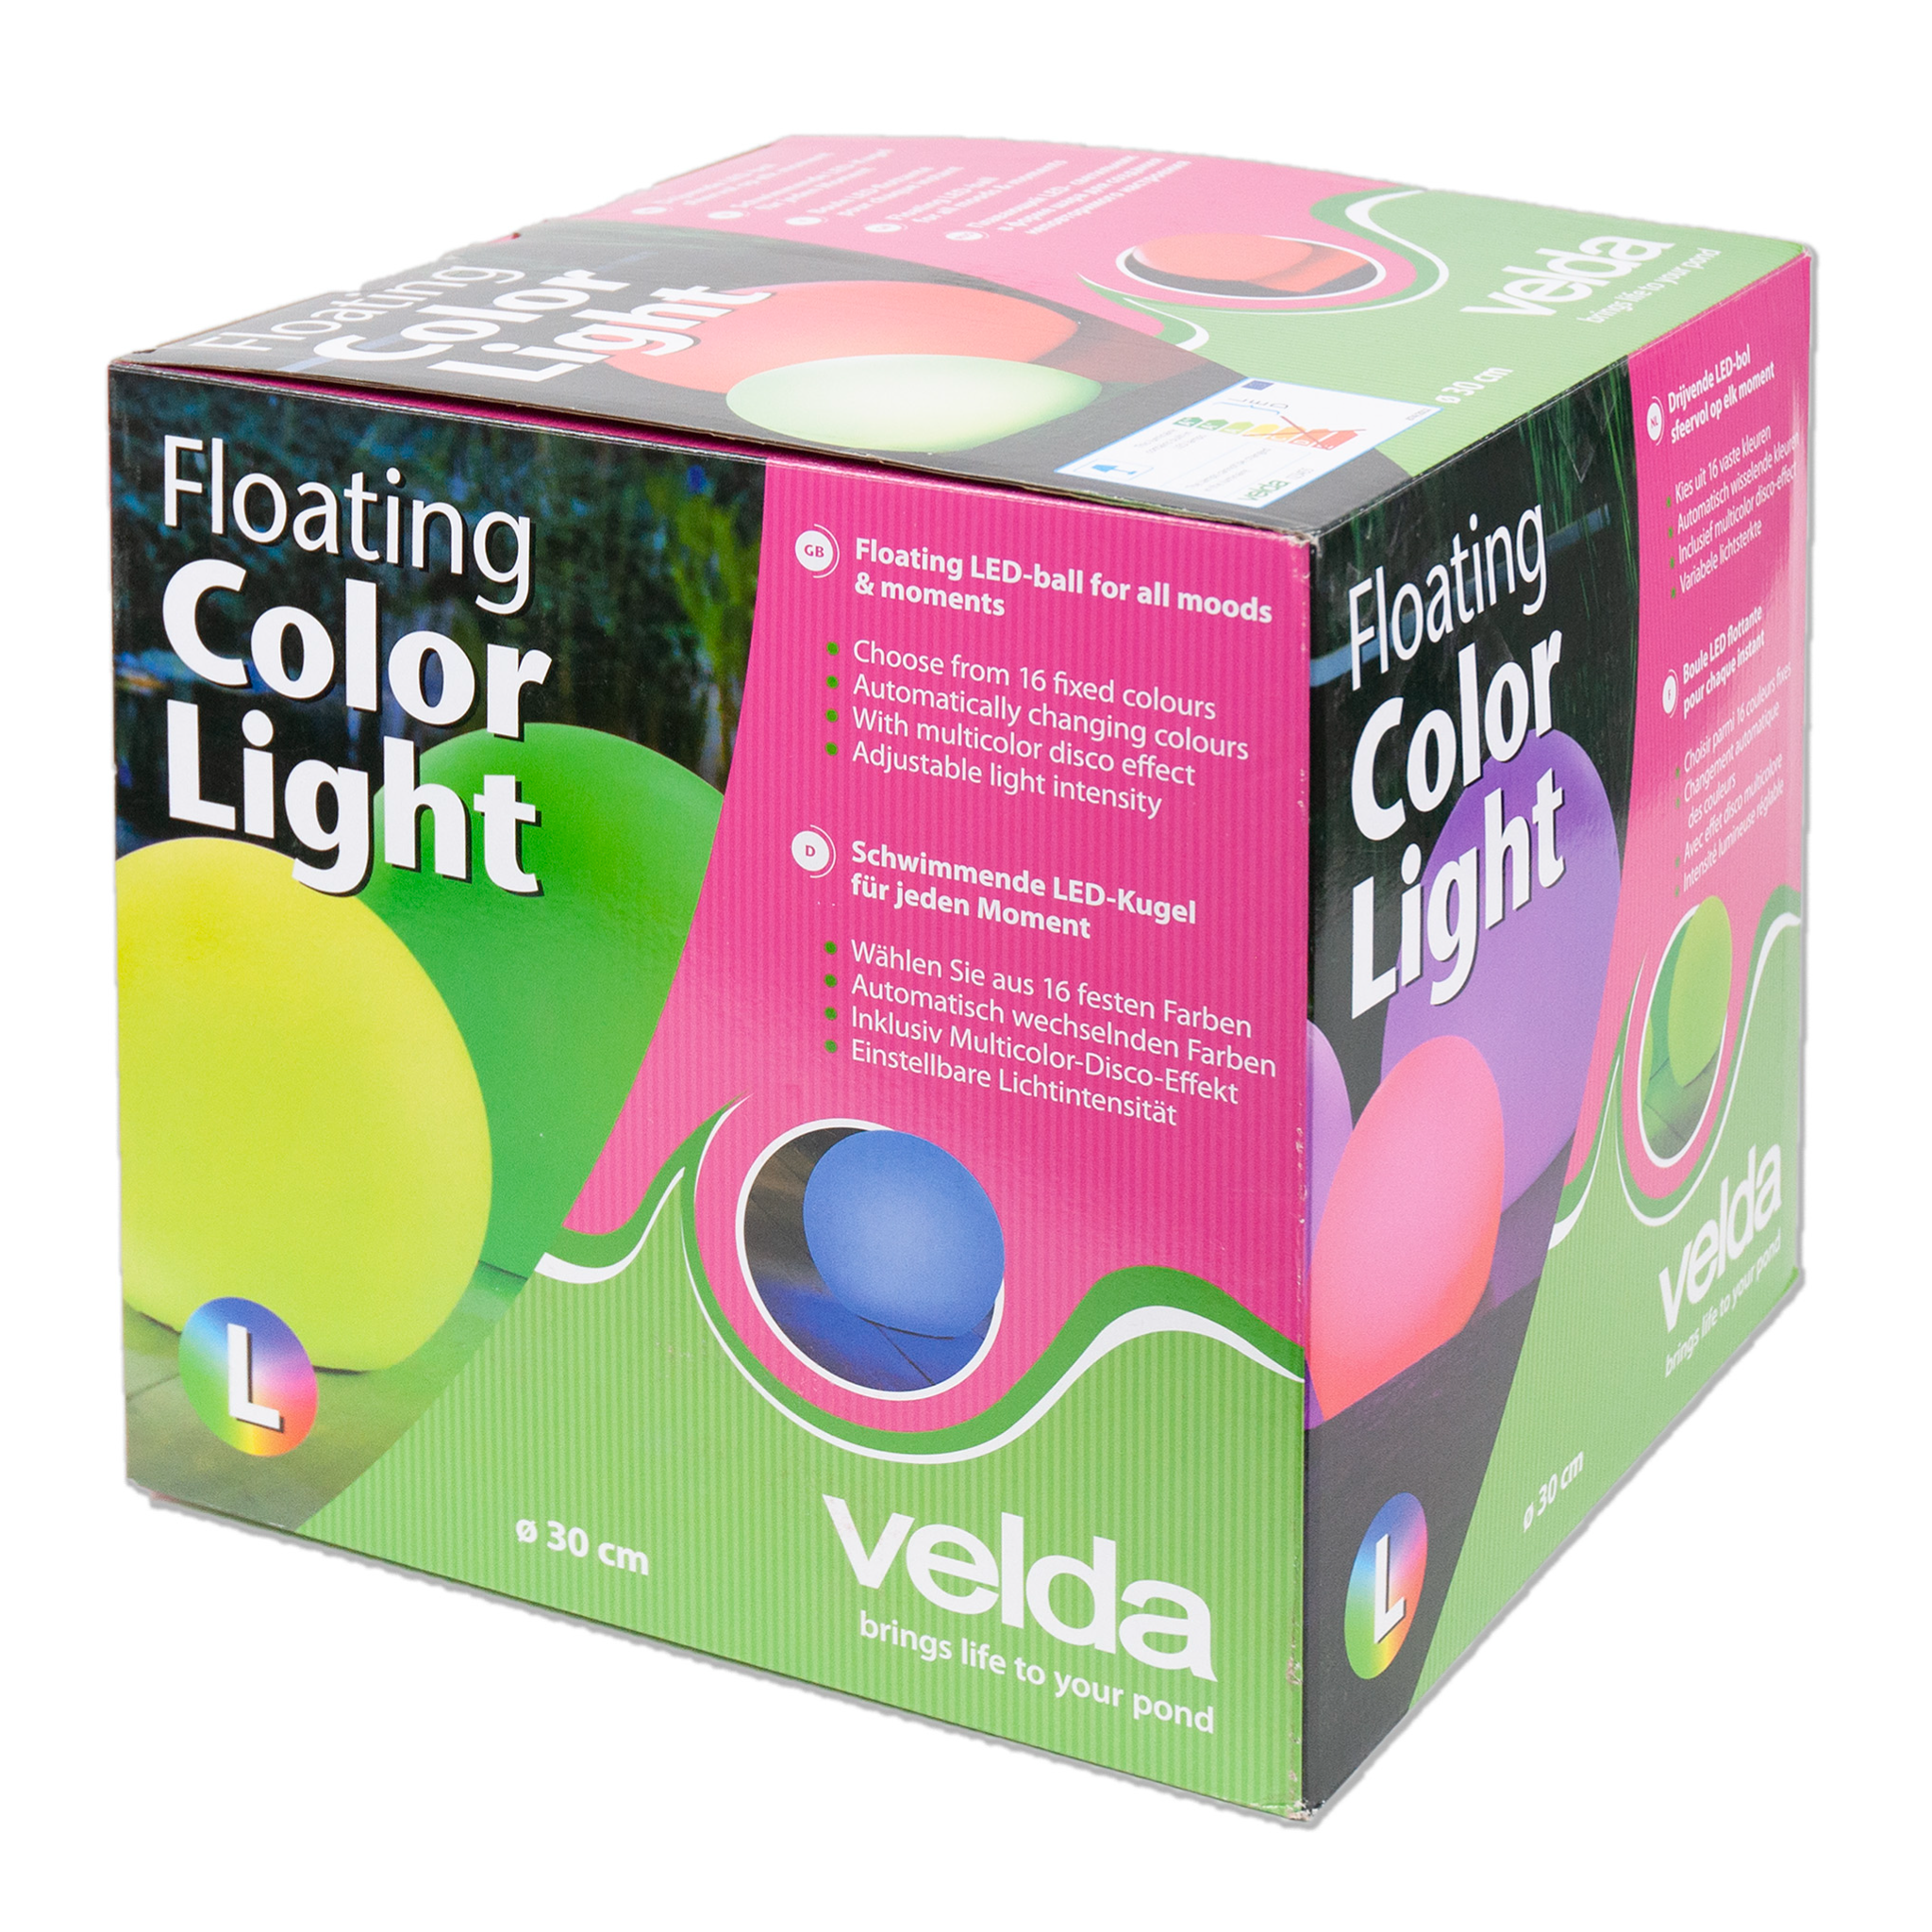 Floating Color Light